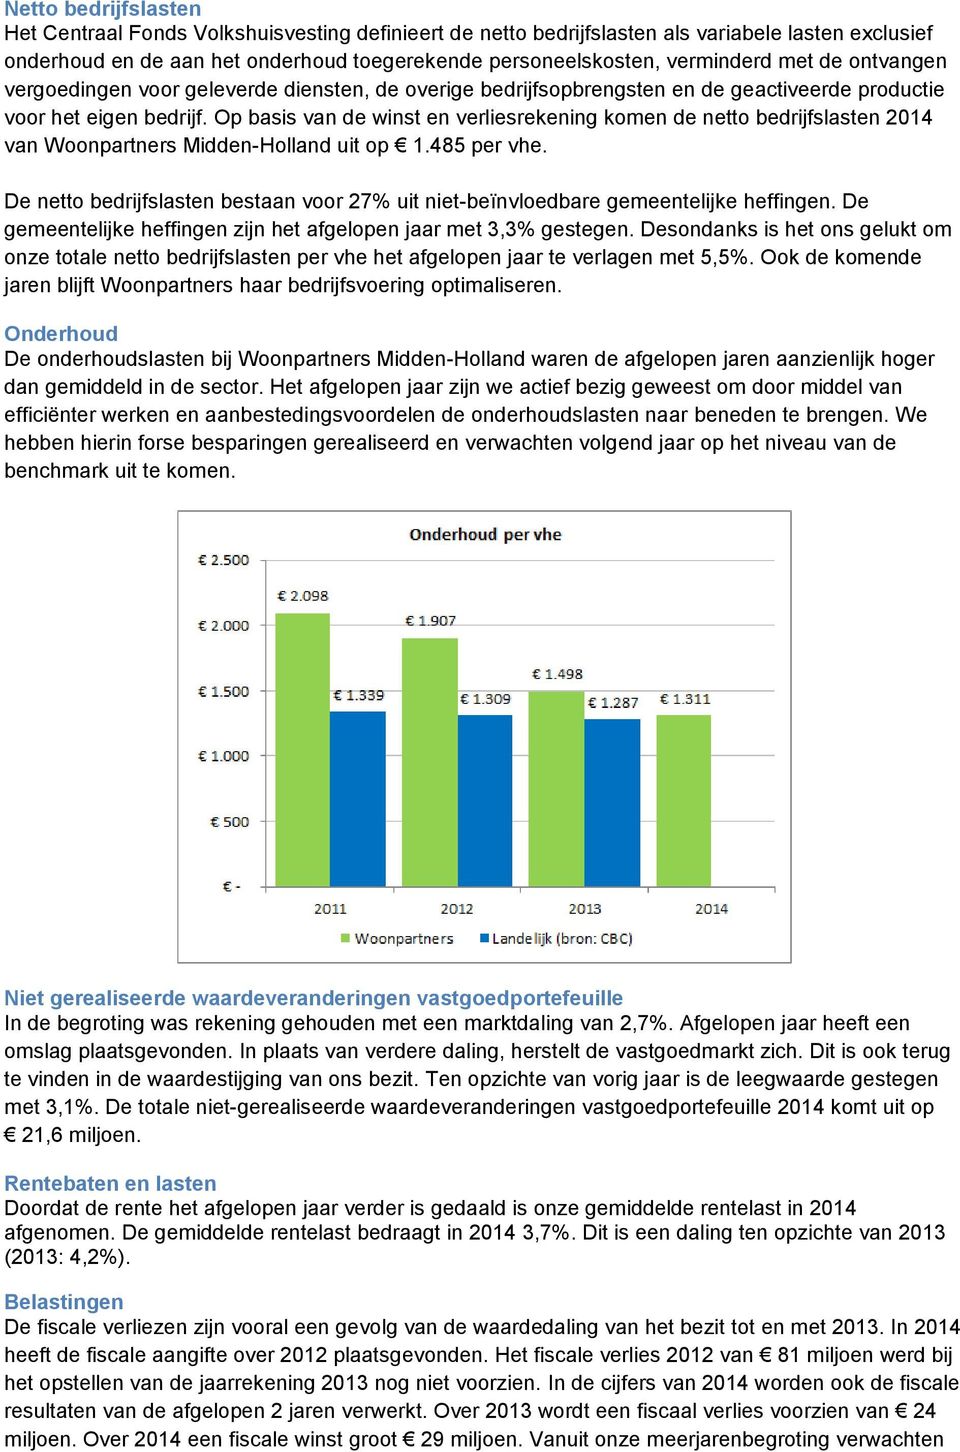 Op basis van de winst en verliesrekening komen de netto bedrijfslasten 2014 van Woonpartners Midden-Holland uit op 1.485 per vhe.